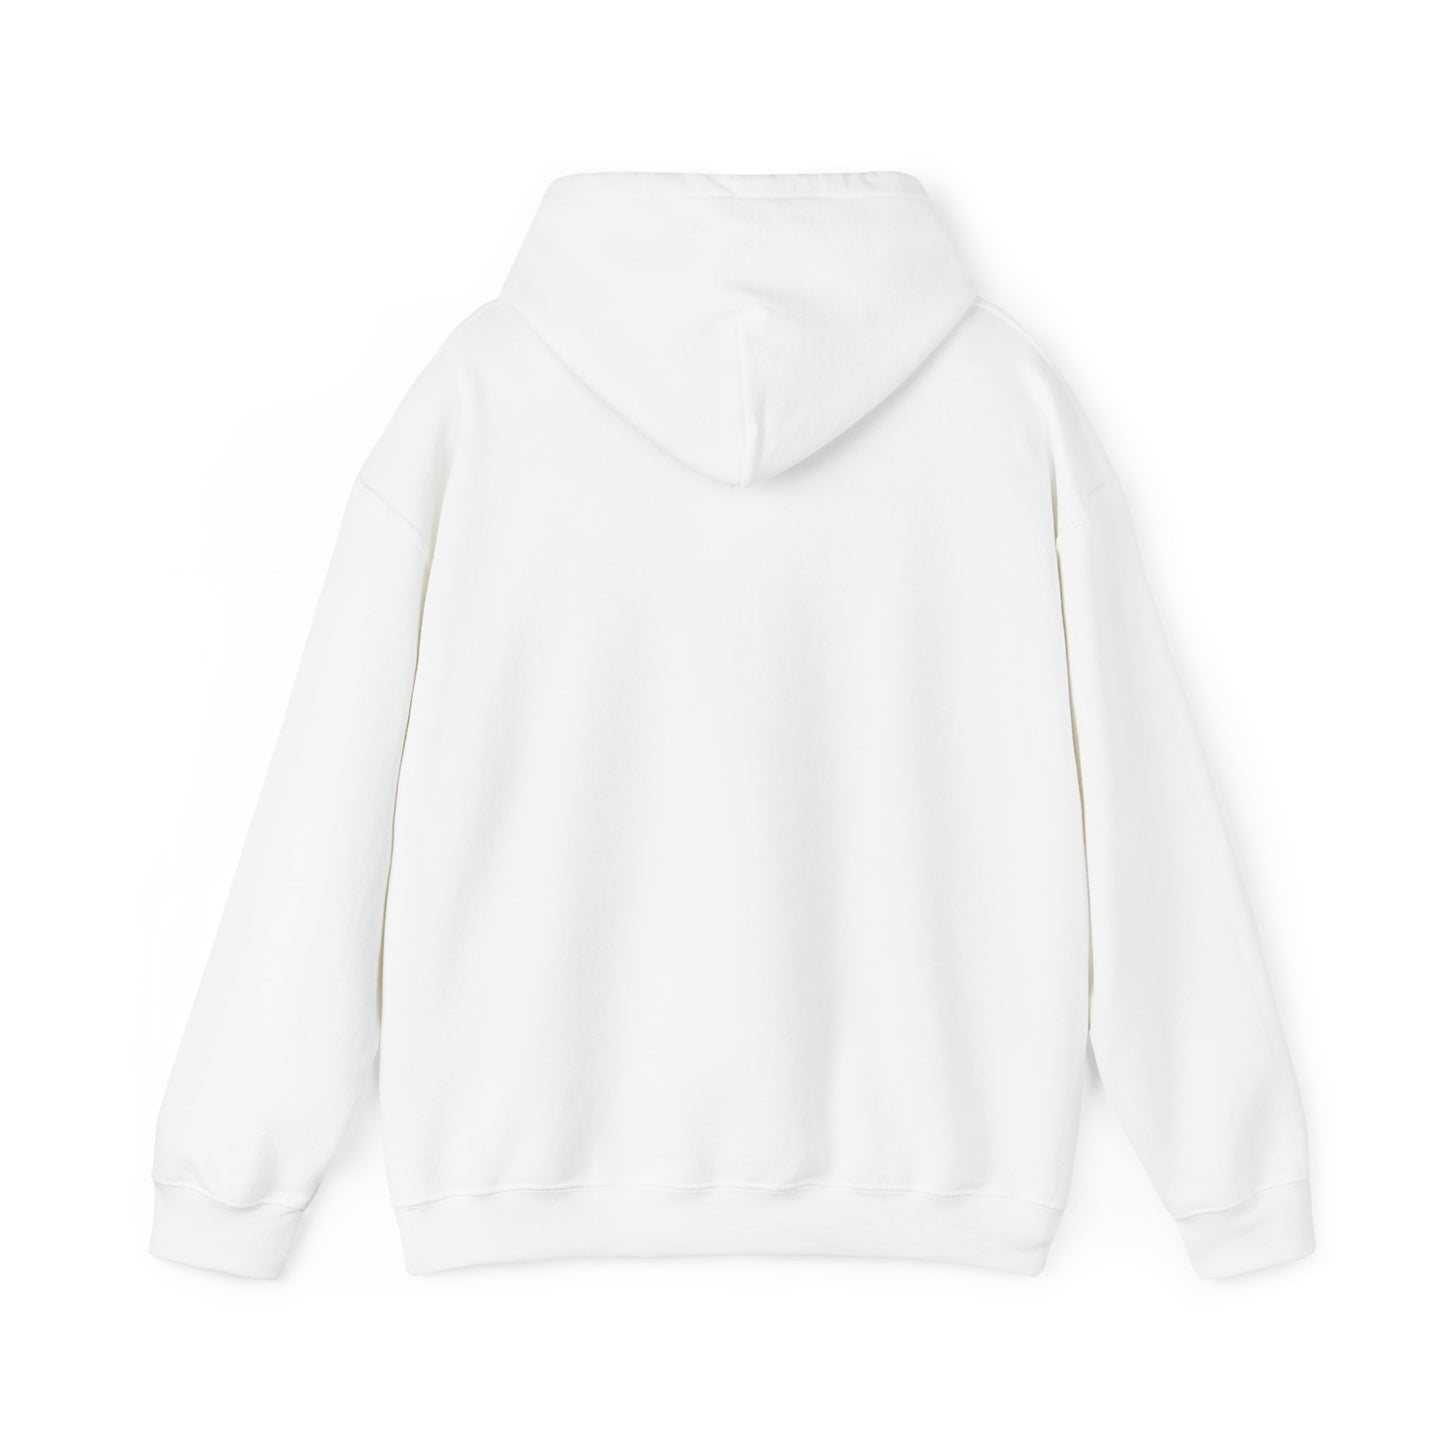 Poppin Unisex Heavy Blend™ Hooded Sweatshirt